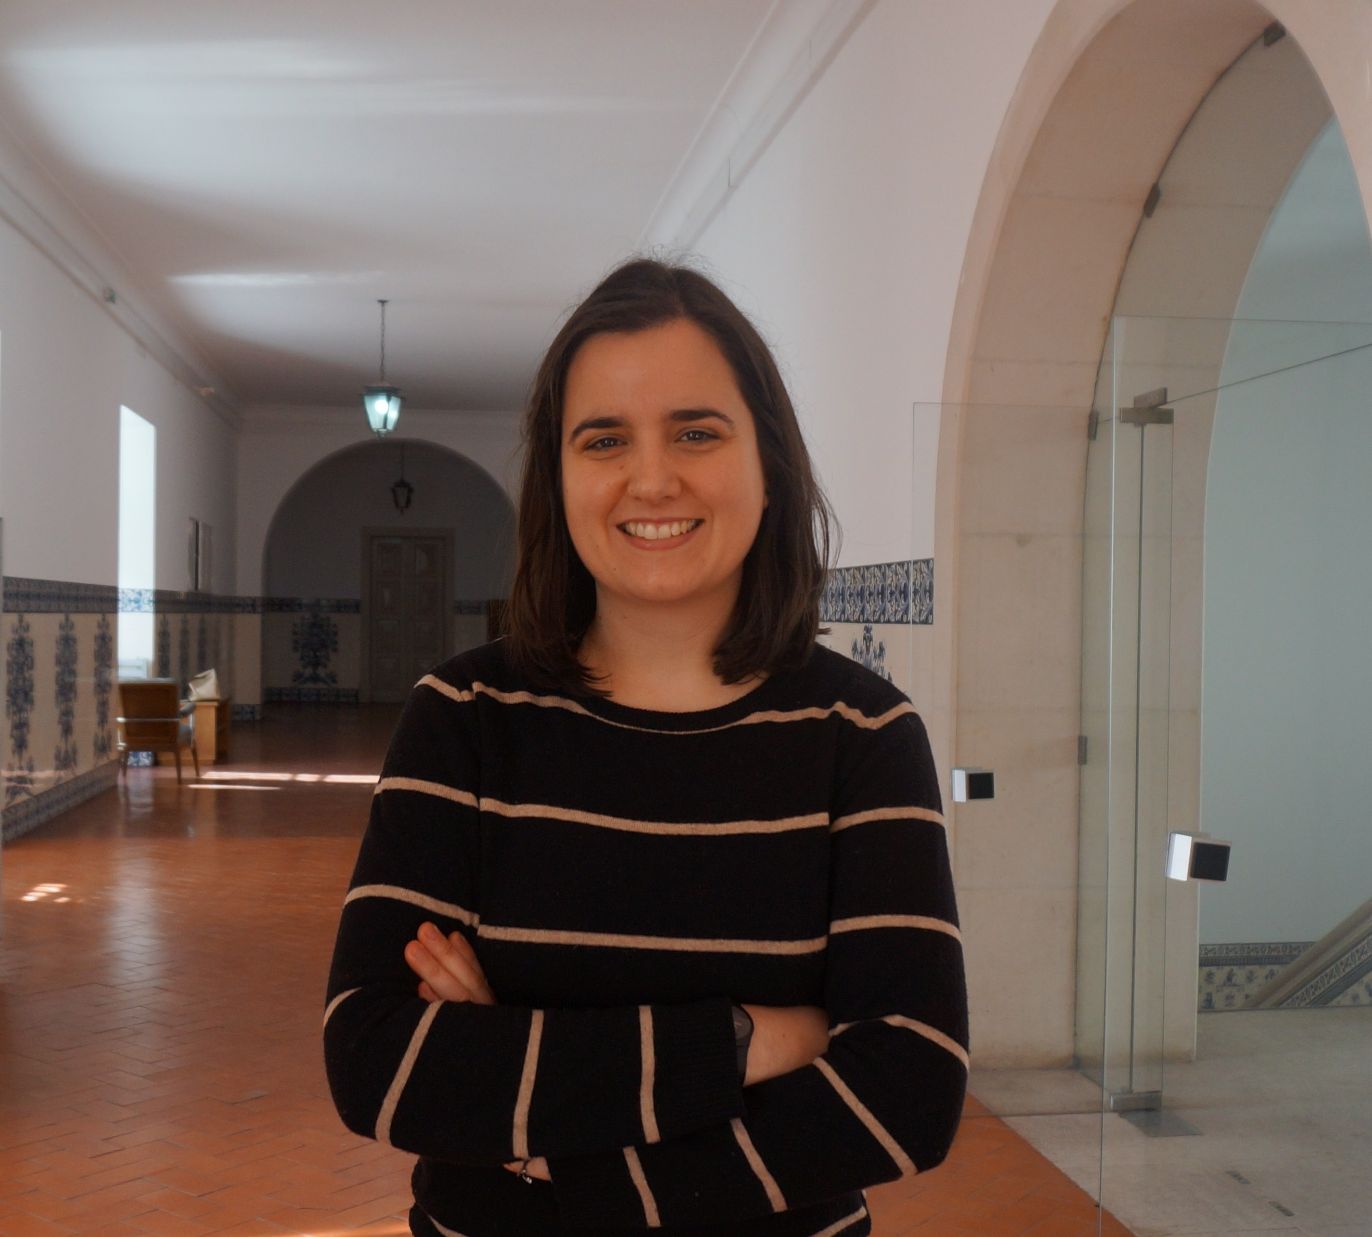 Investigadora da Universidade de Coimbra distinguida com Prémio Maria de Sousa